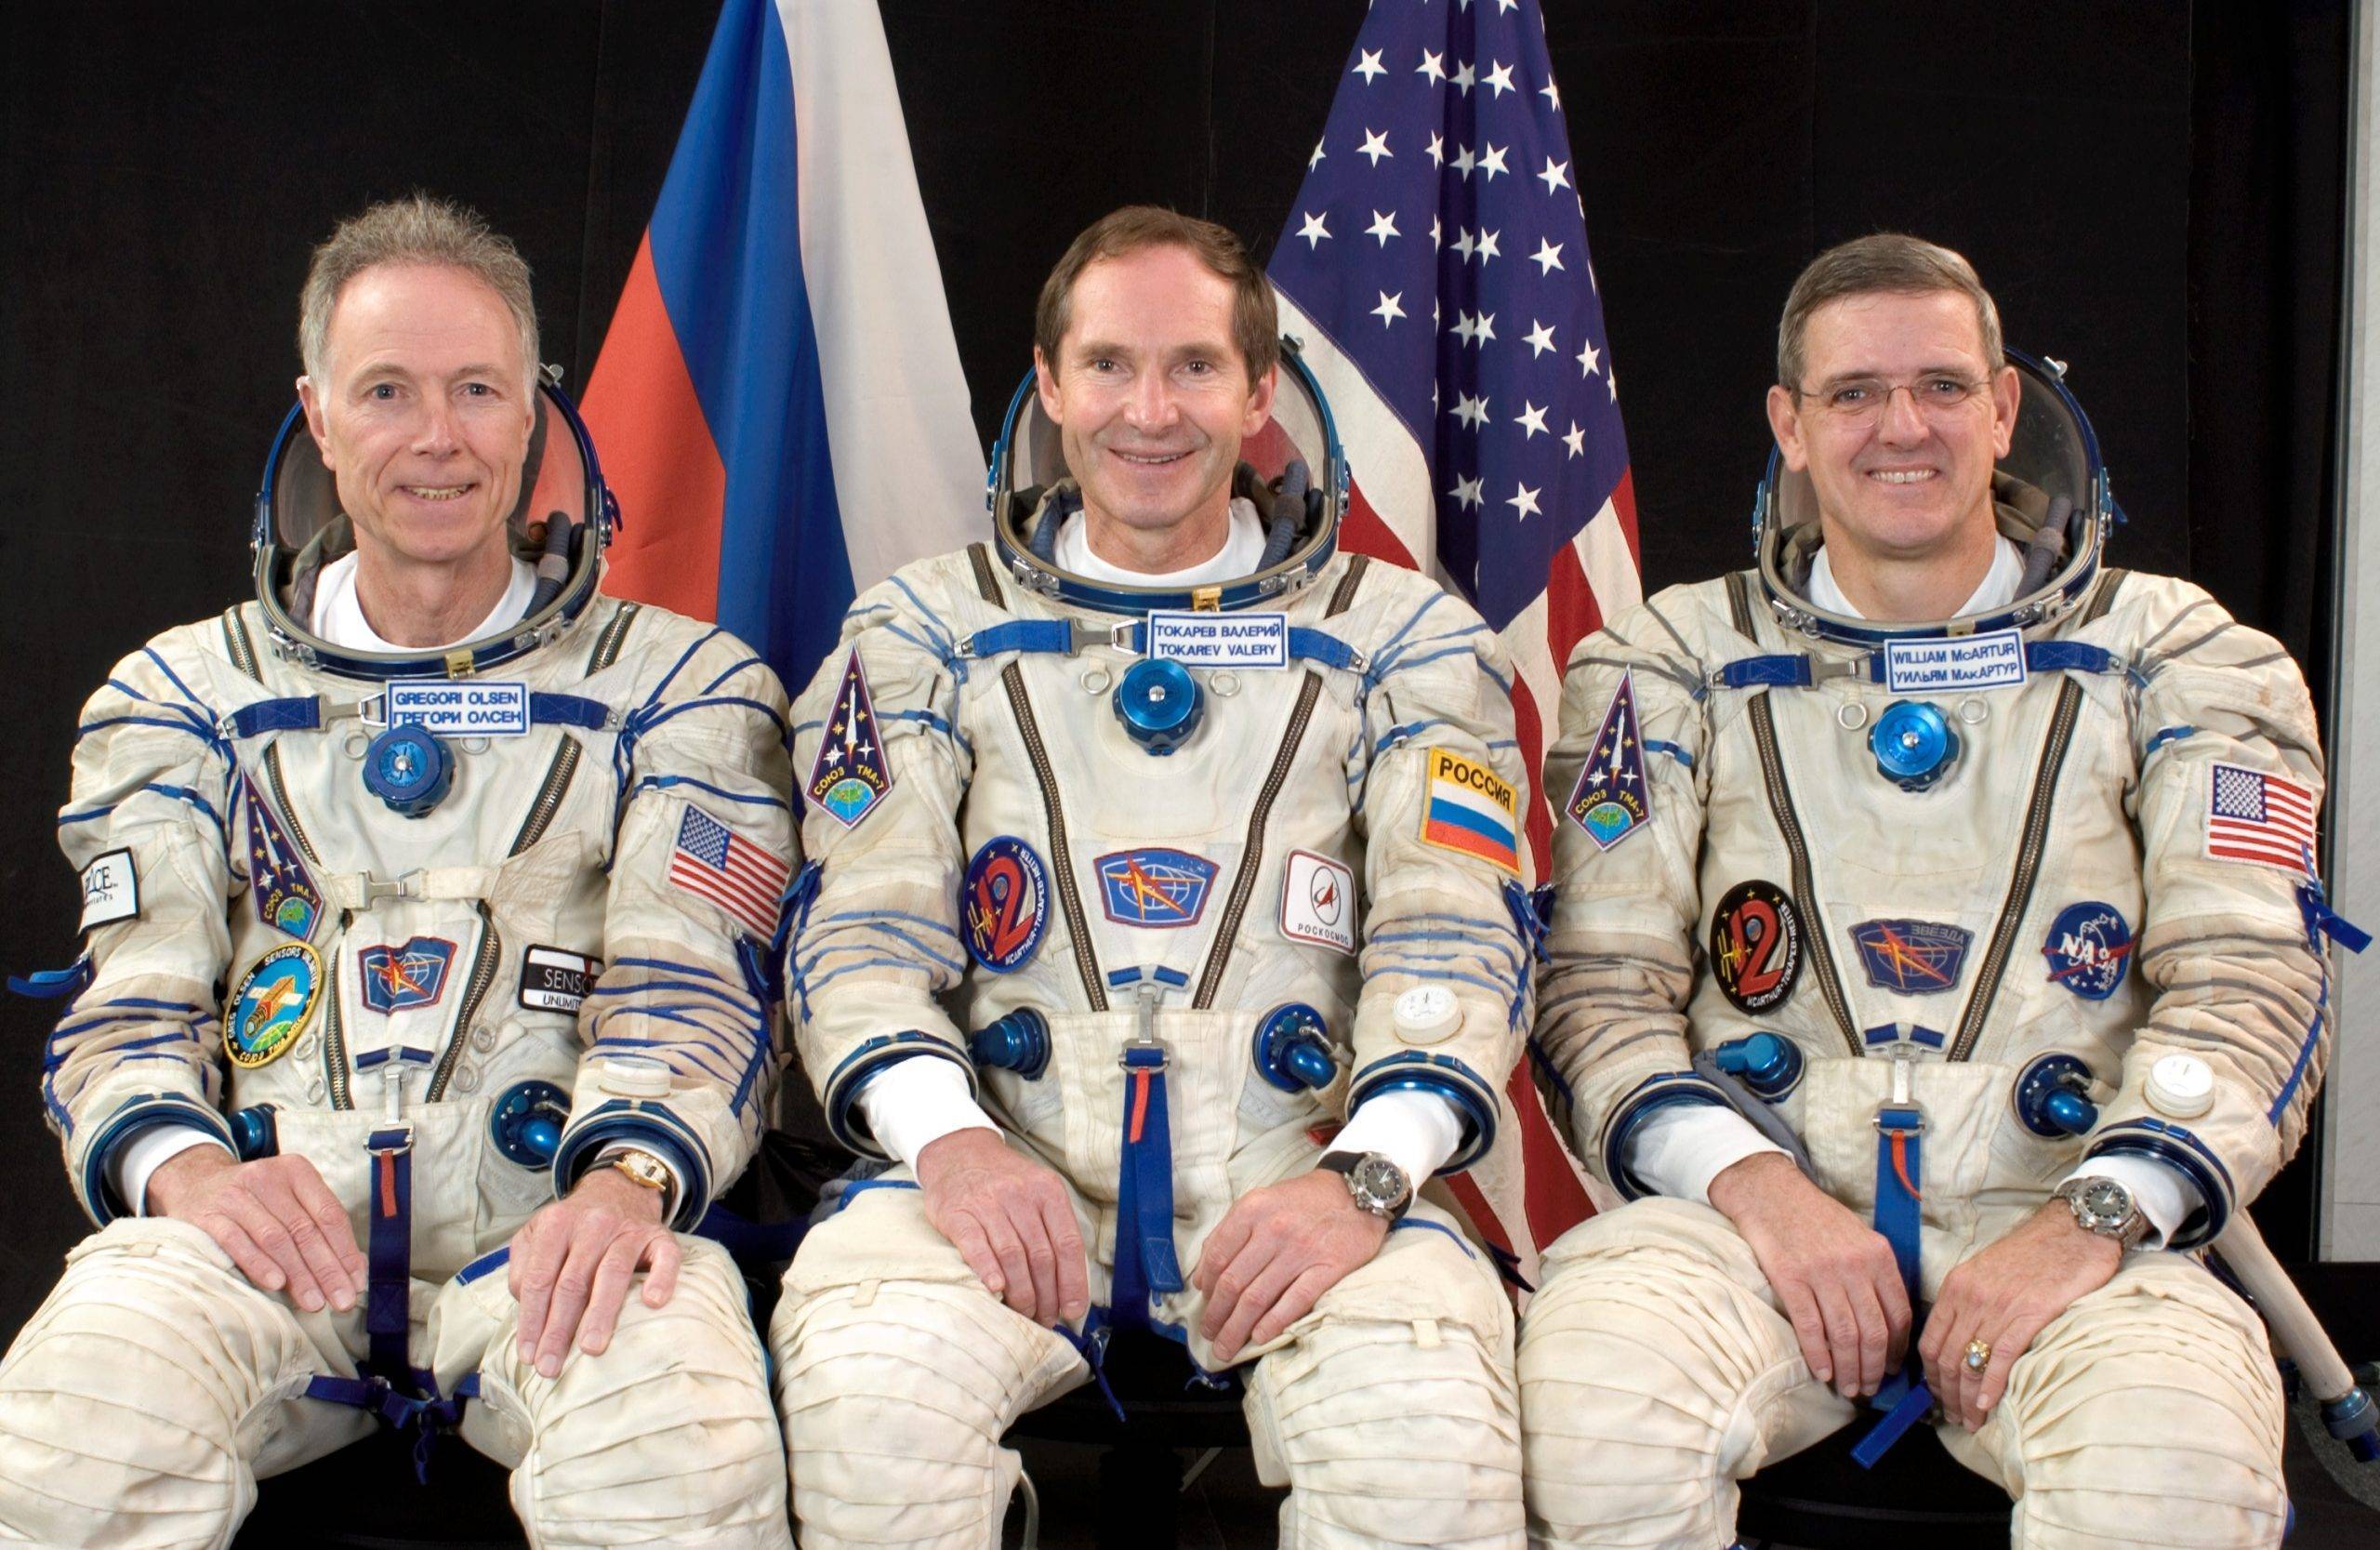 Какую зарплату получают космонавты россии и сша? - topblognews.ru